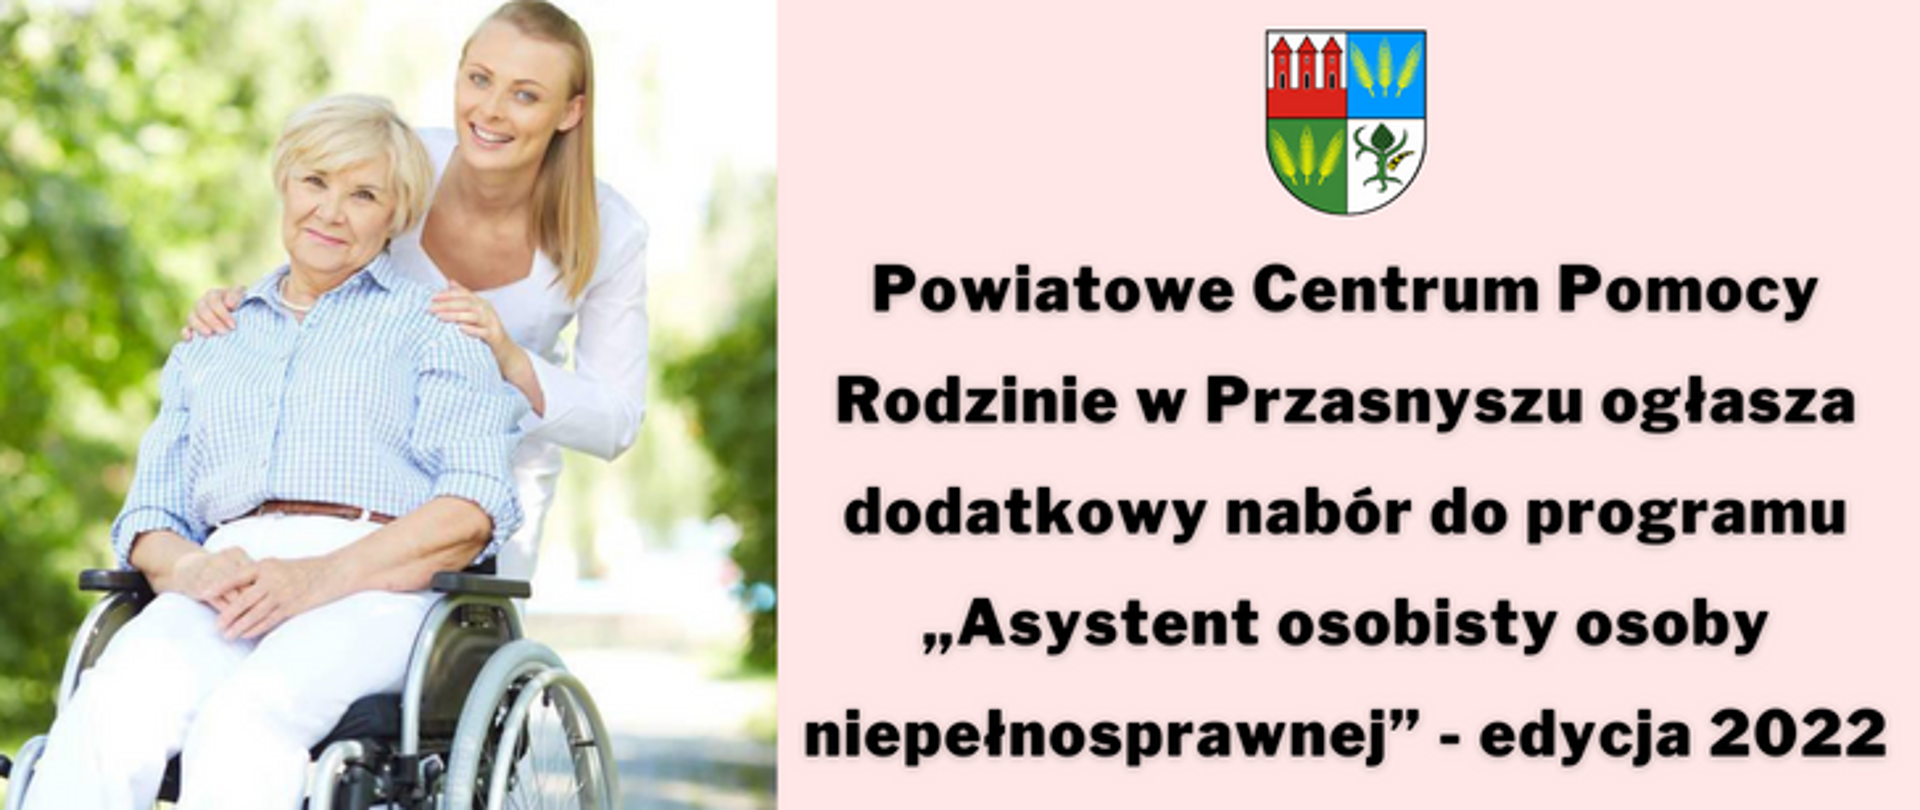 Powiatowe Centrum Pomocy Rodzinie ogłasza dodatkowy nabór do programu „Asystent osobisty osoby niepełnosprawnej”.